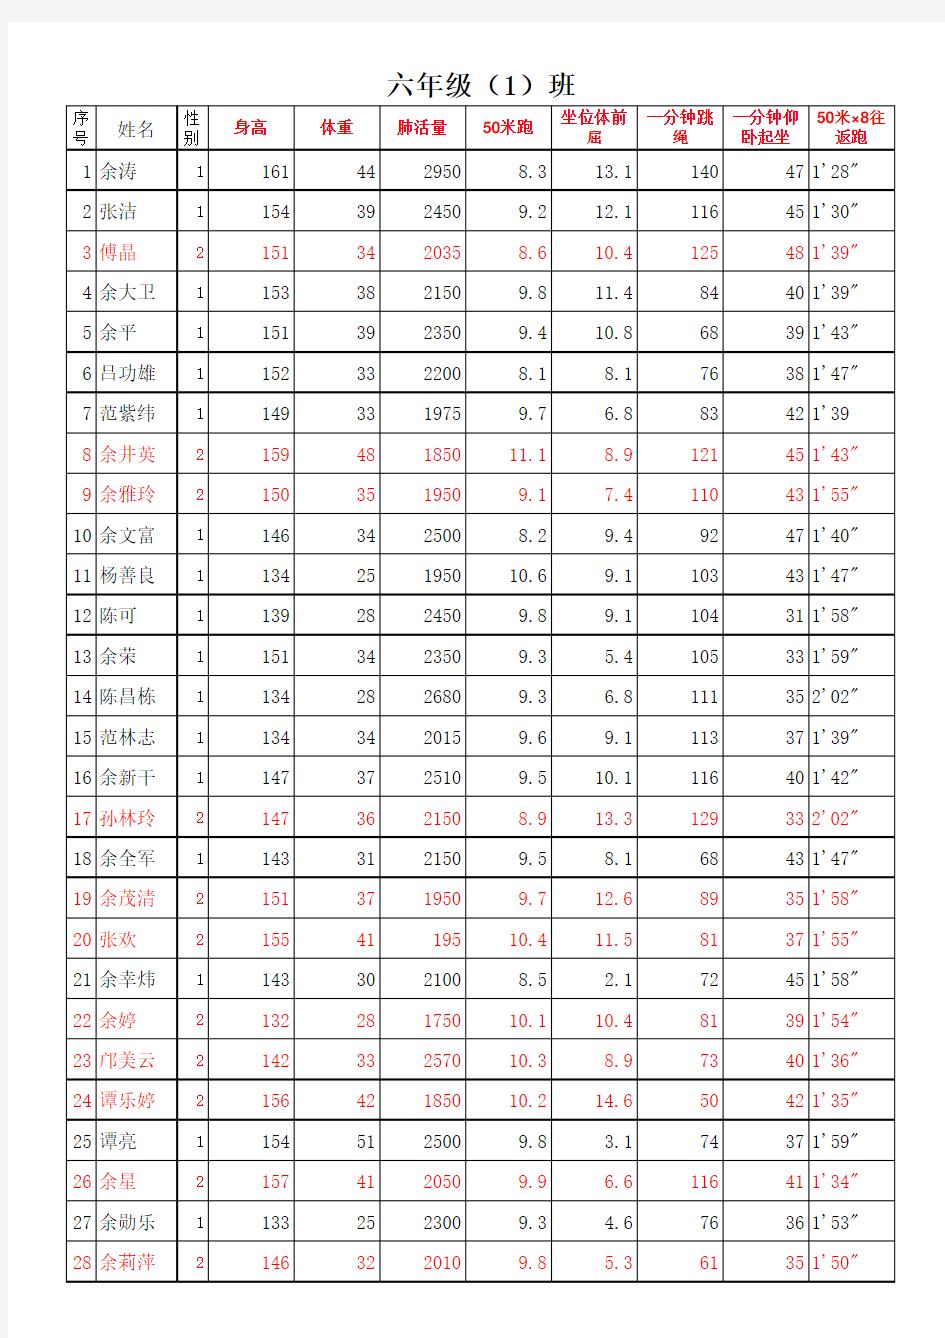 副本2014下国家体育测试记录表(003)